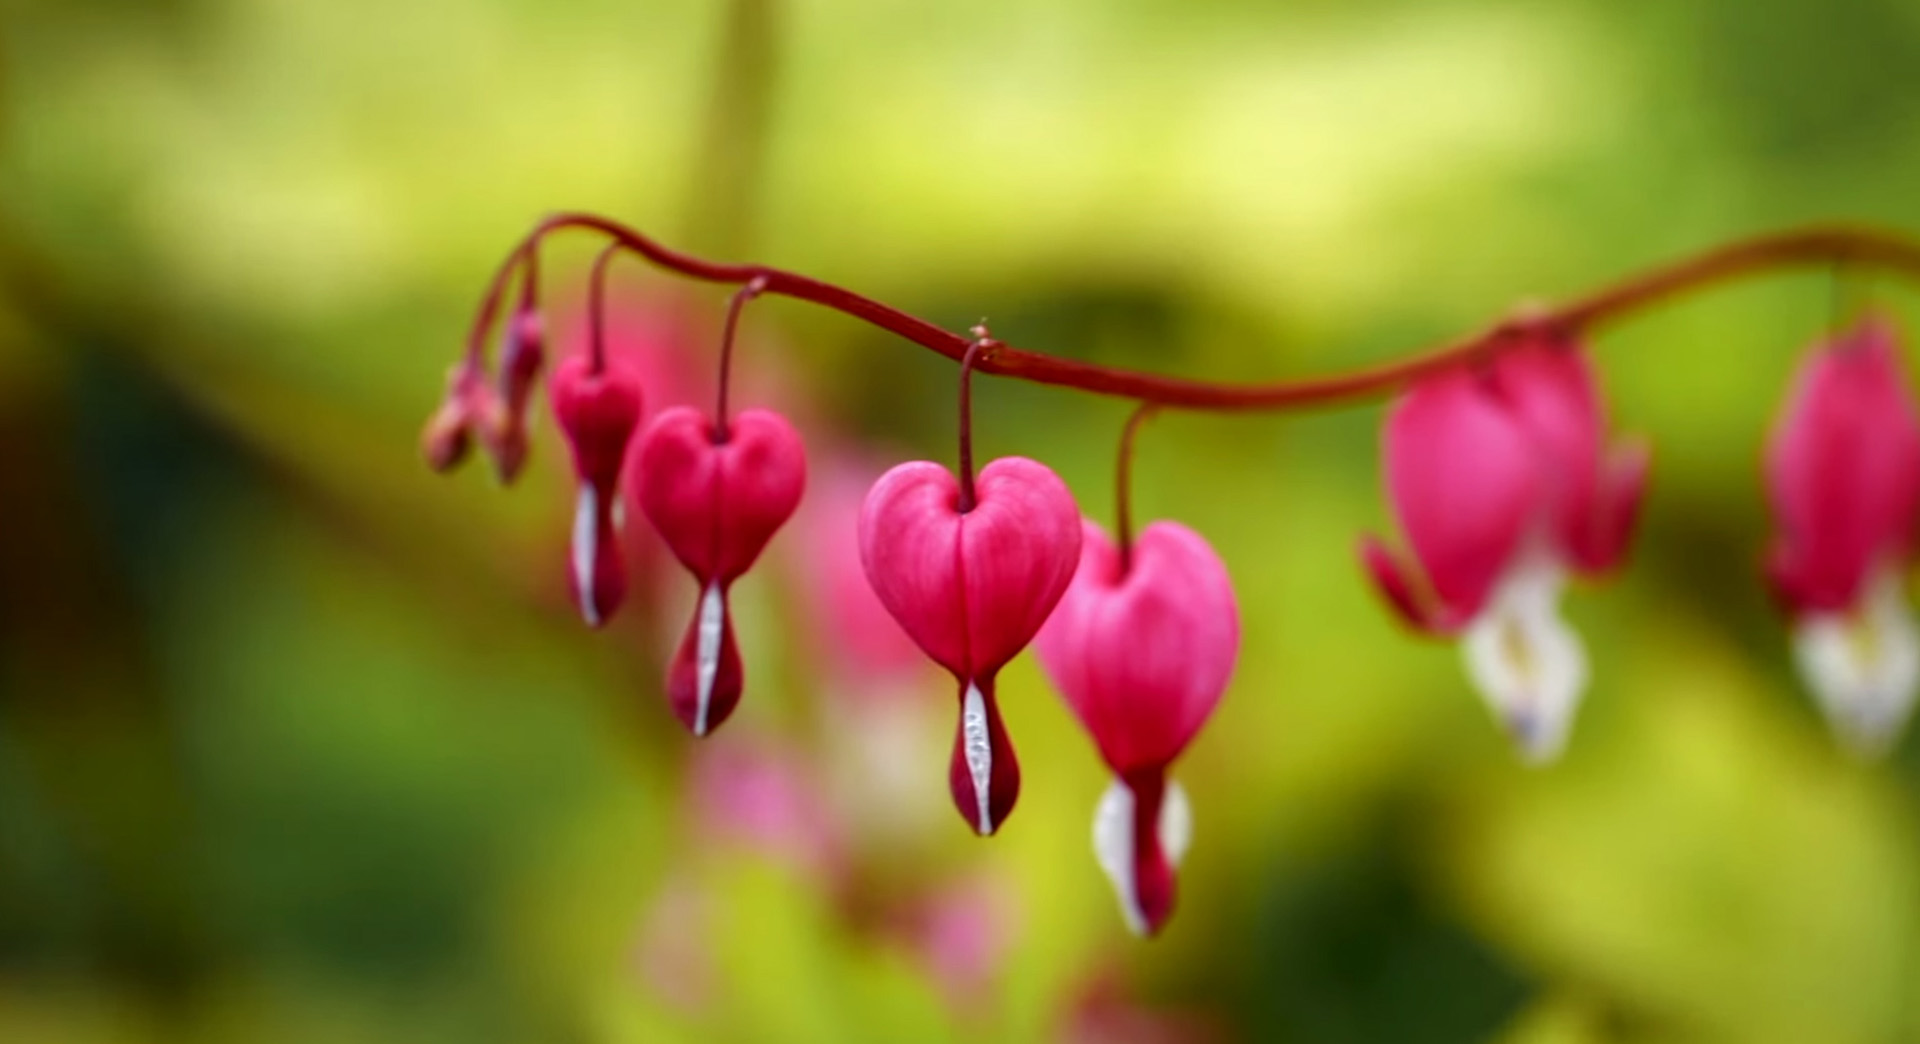 Primer plano de flores de corazón sangrante de color rosa intenso, típicas flores de jardín en primavera.